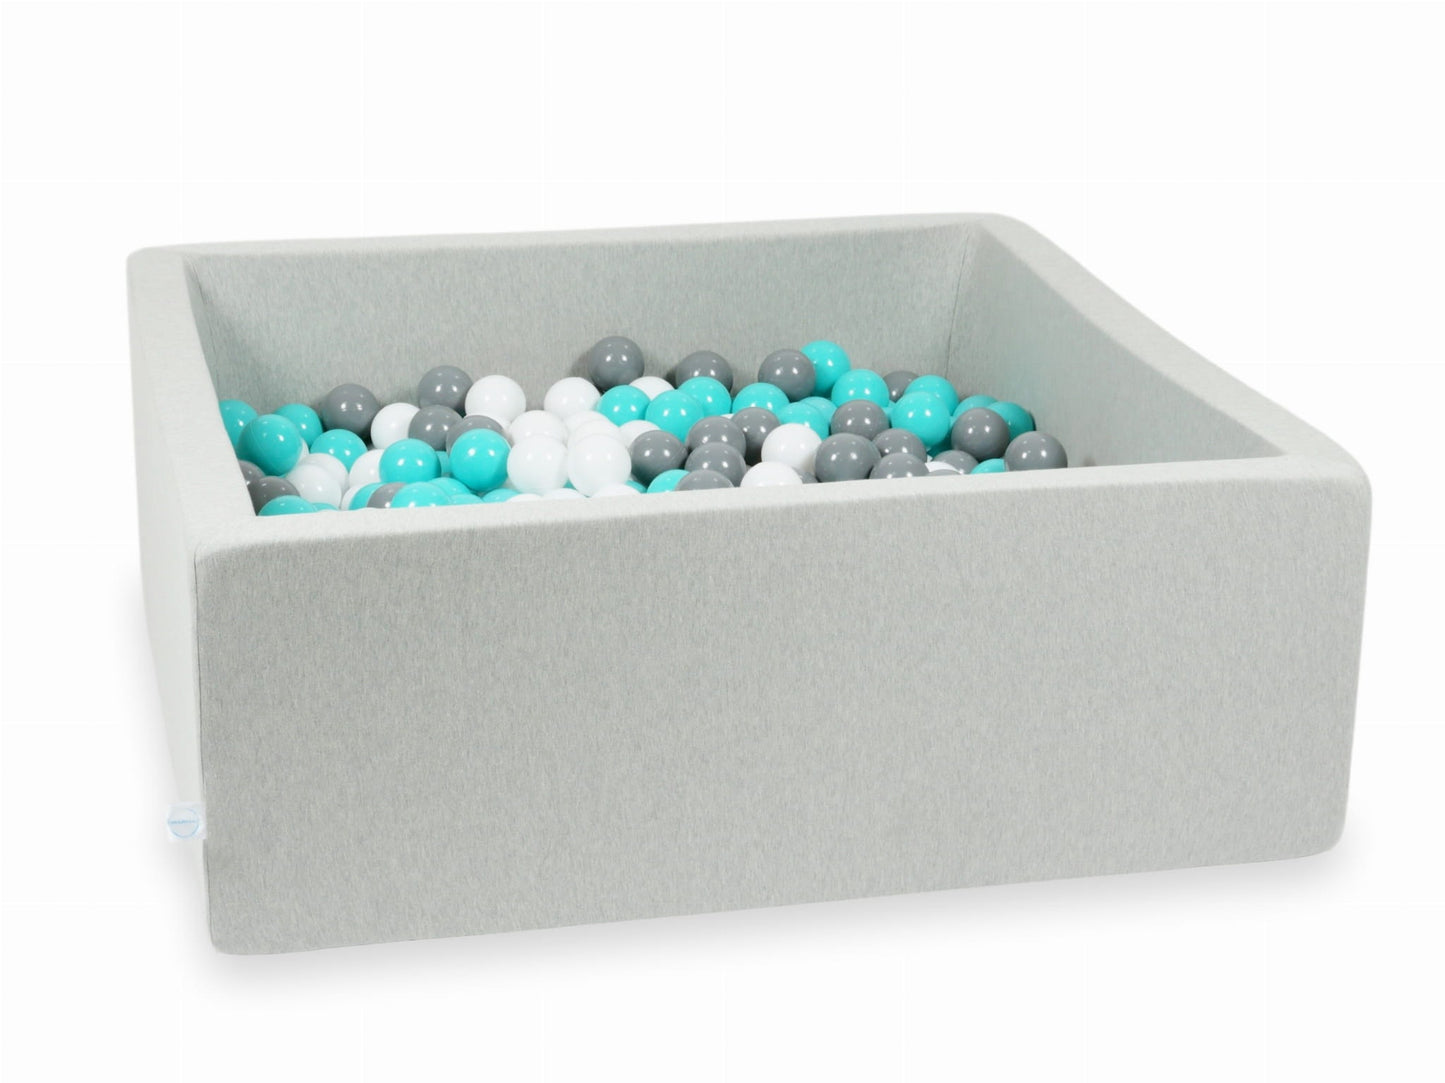 Piscine à Balles 110x110x40 gris clair avec balles 600 pcs (turquoise, blanc, gris)